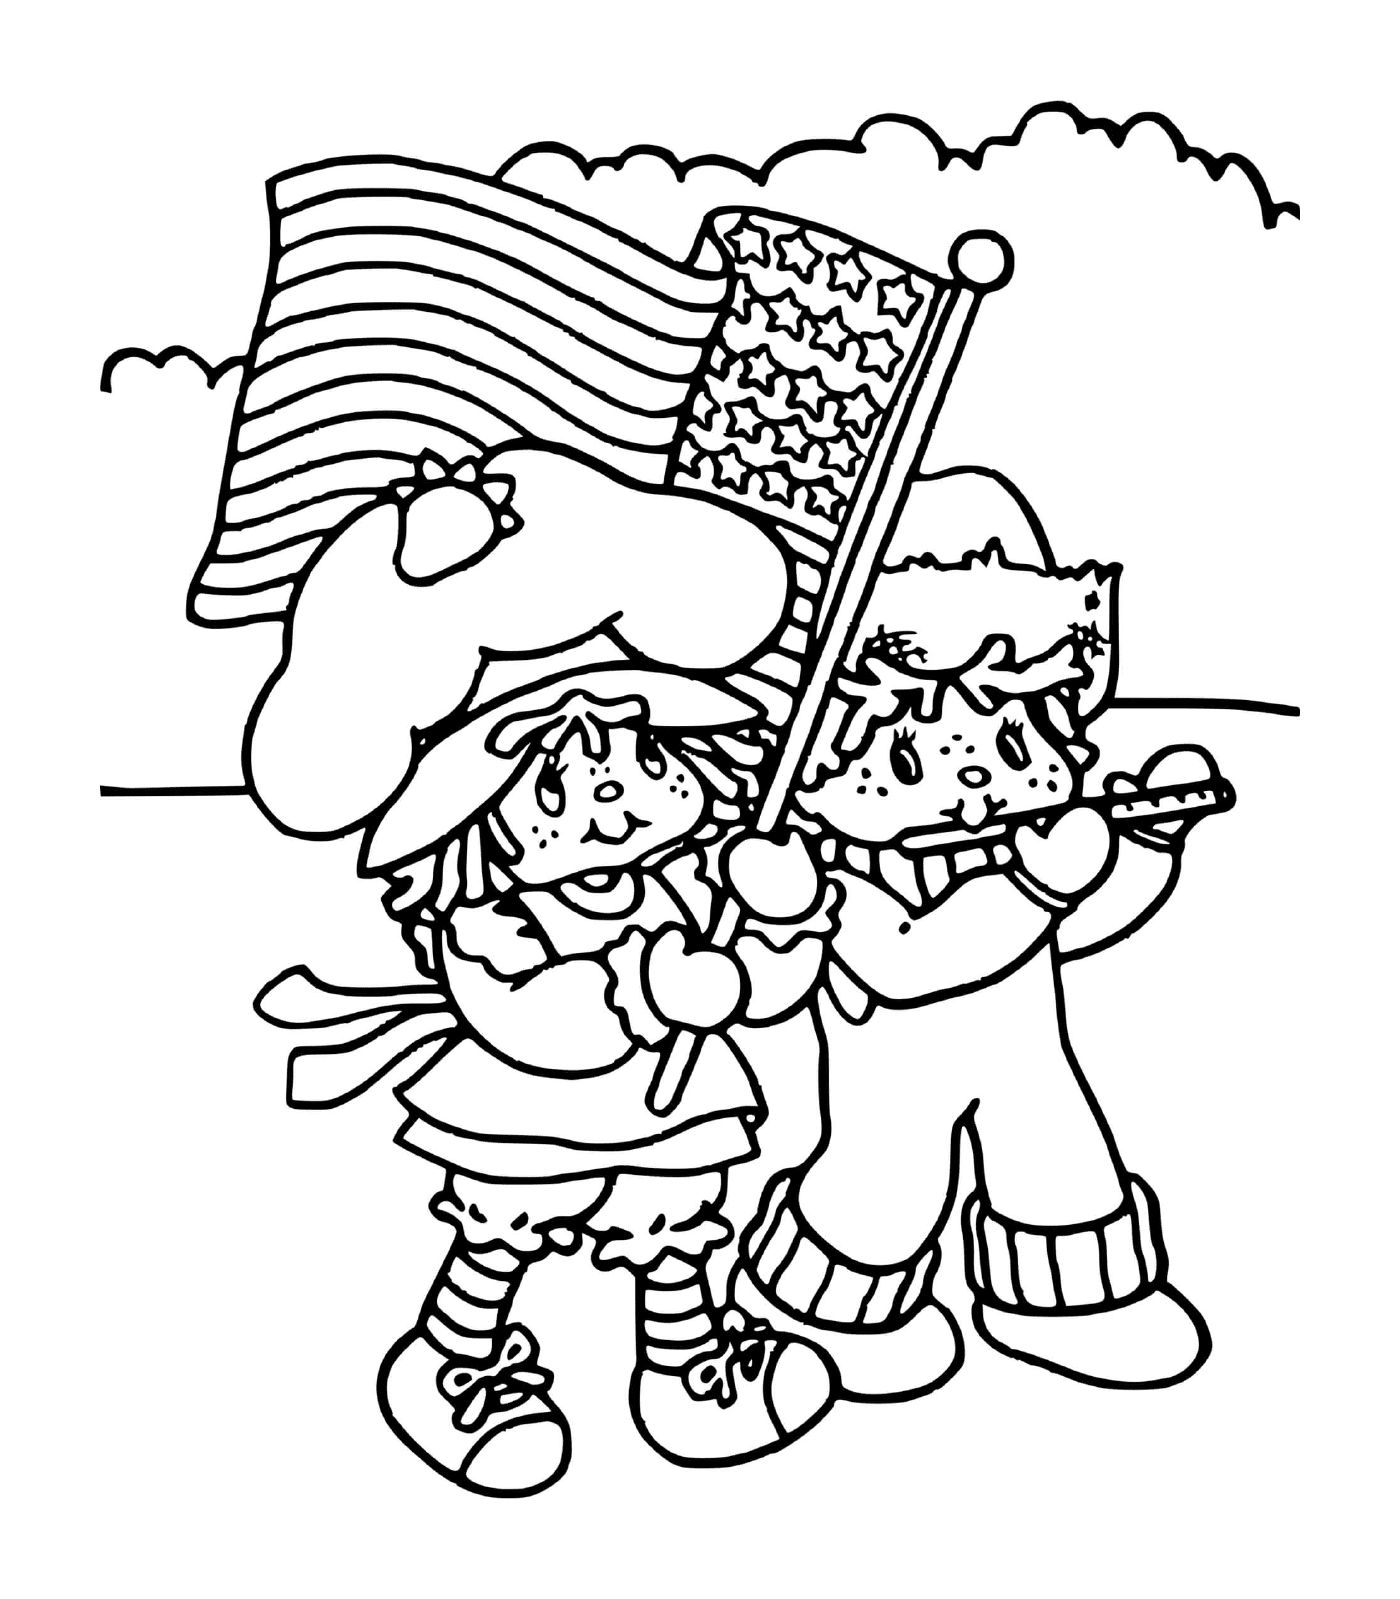  Charlotte em morangos com uma bandeira americana 